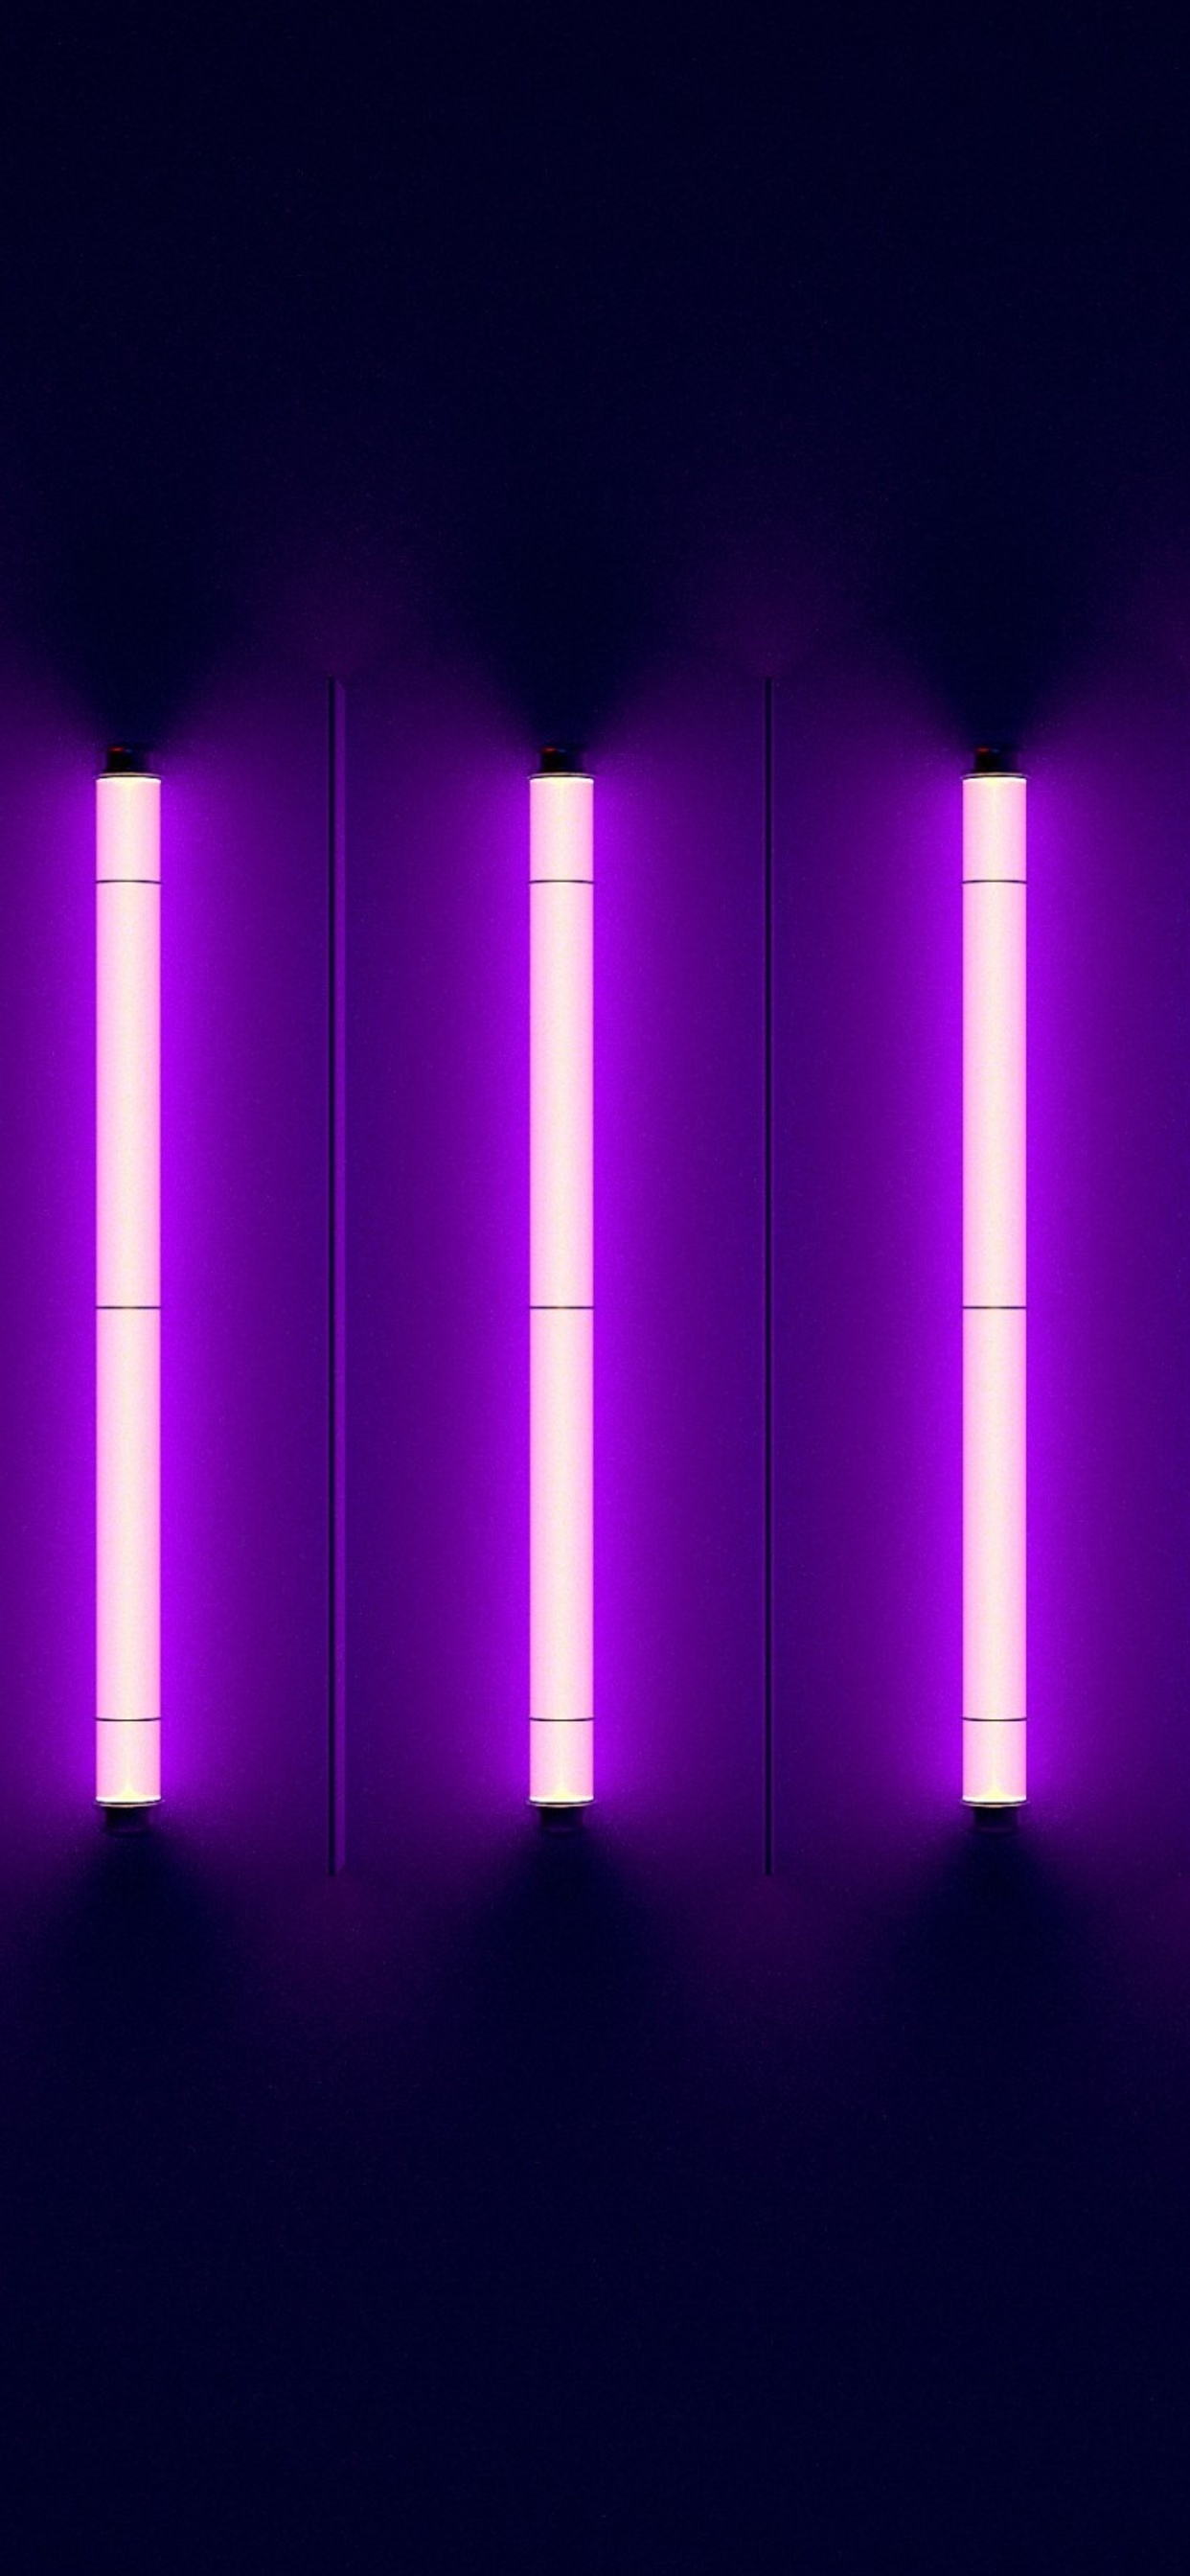 Neon Light Trees iPhone Wallpaper | Неоновые обои, Геометрический постер,  Абстрактное